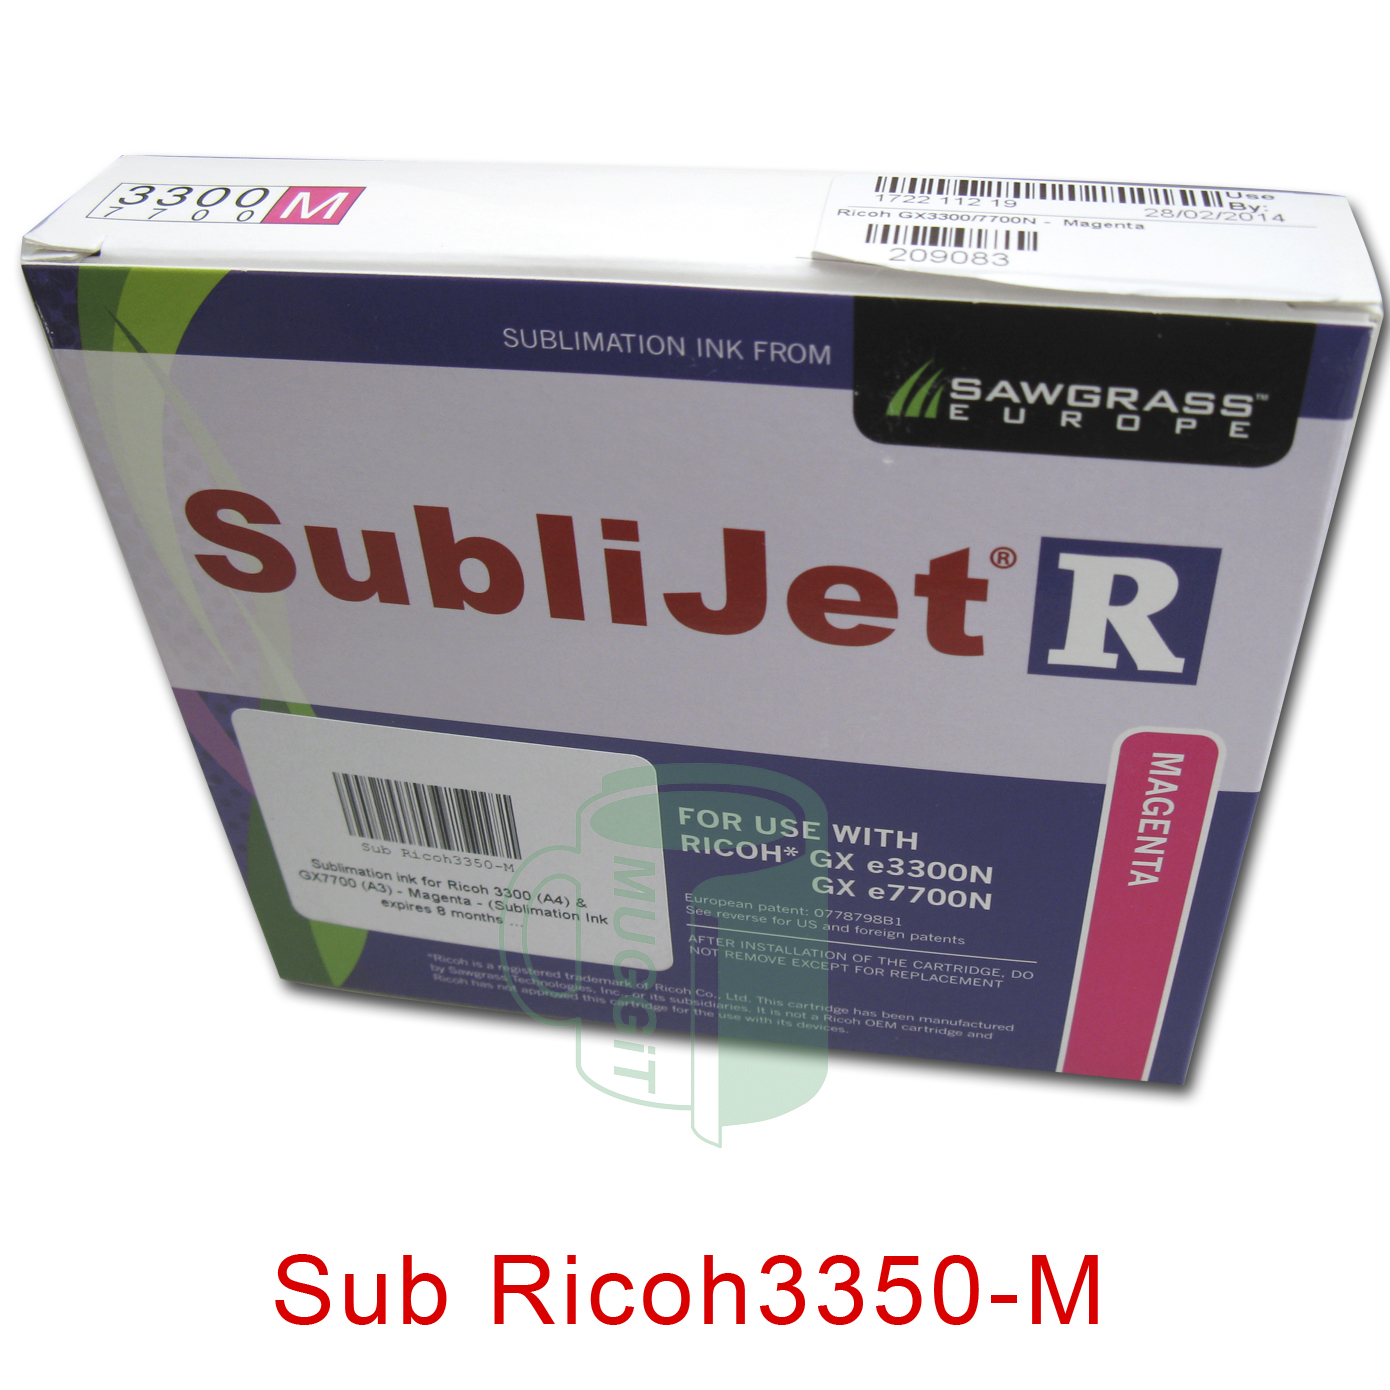 Sub Ricoh3350-M 1